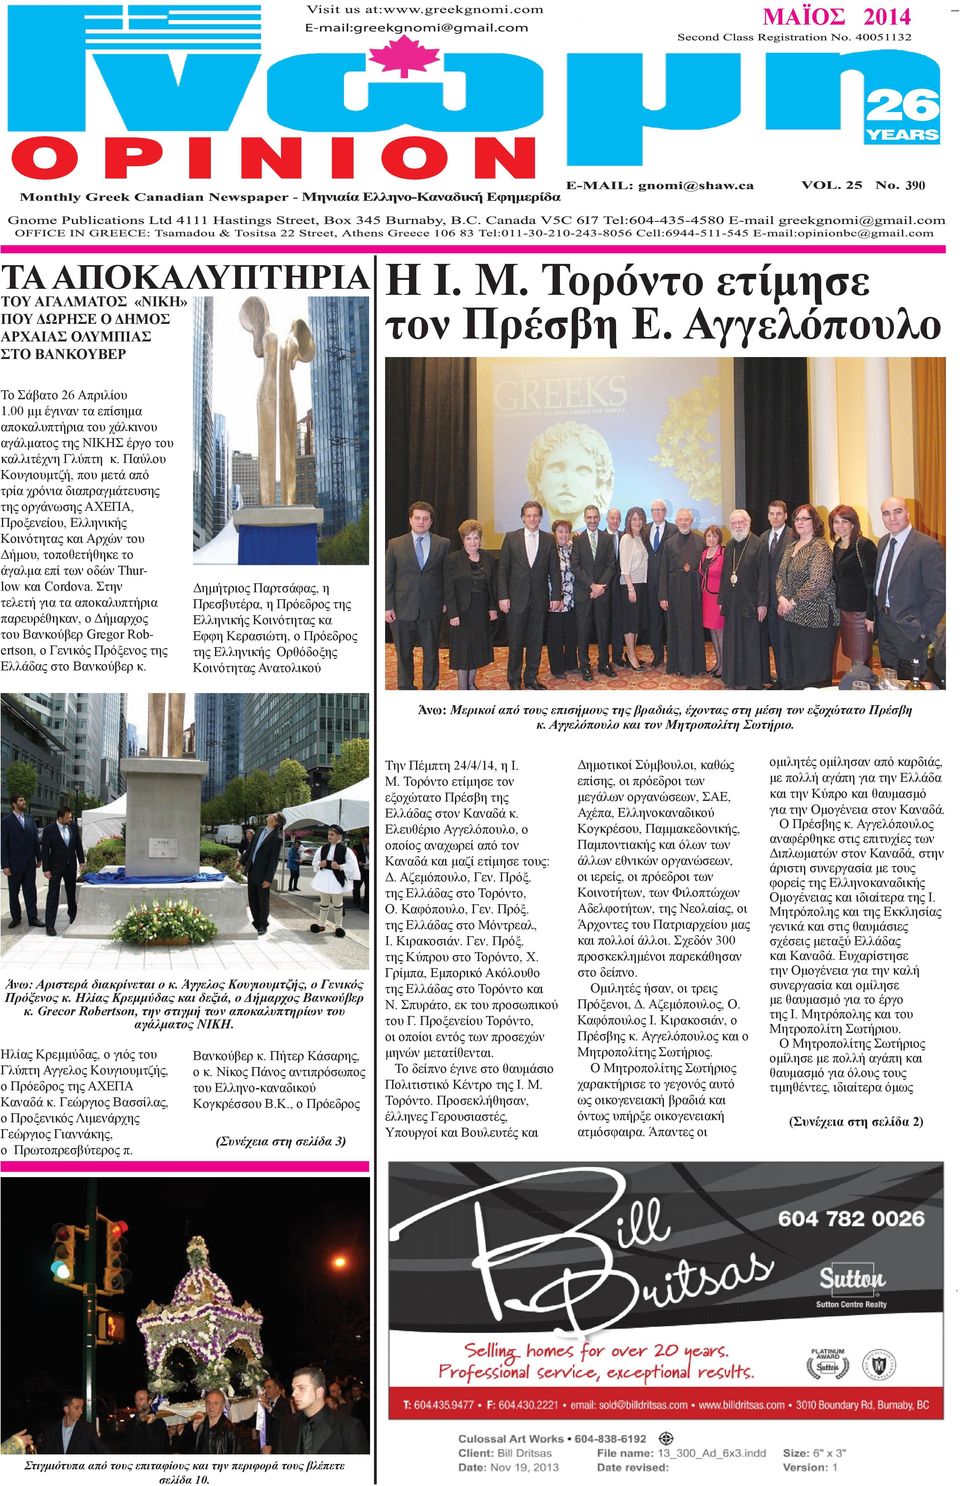 Παύλου Κουγιουμτζή, που μετά από τρία χρόνια διαπραγμάτευσης της οργάνωσης ΑΧΕΠΑ, Προξενείου, Ελληνικής Κοινότητας και Αρχών του Δήμου, τοποθετήθηκε το άγαλμα επί των οδών Thurlow και Cordova.